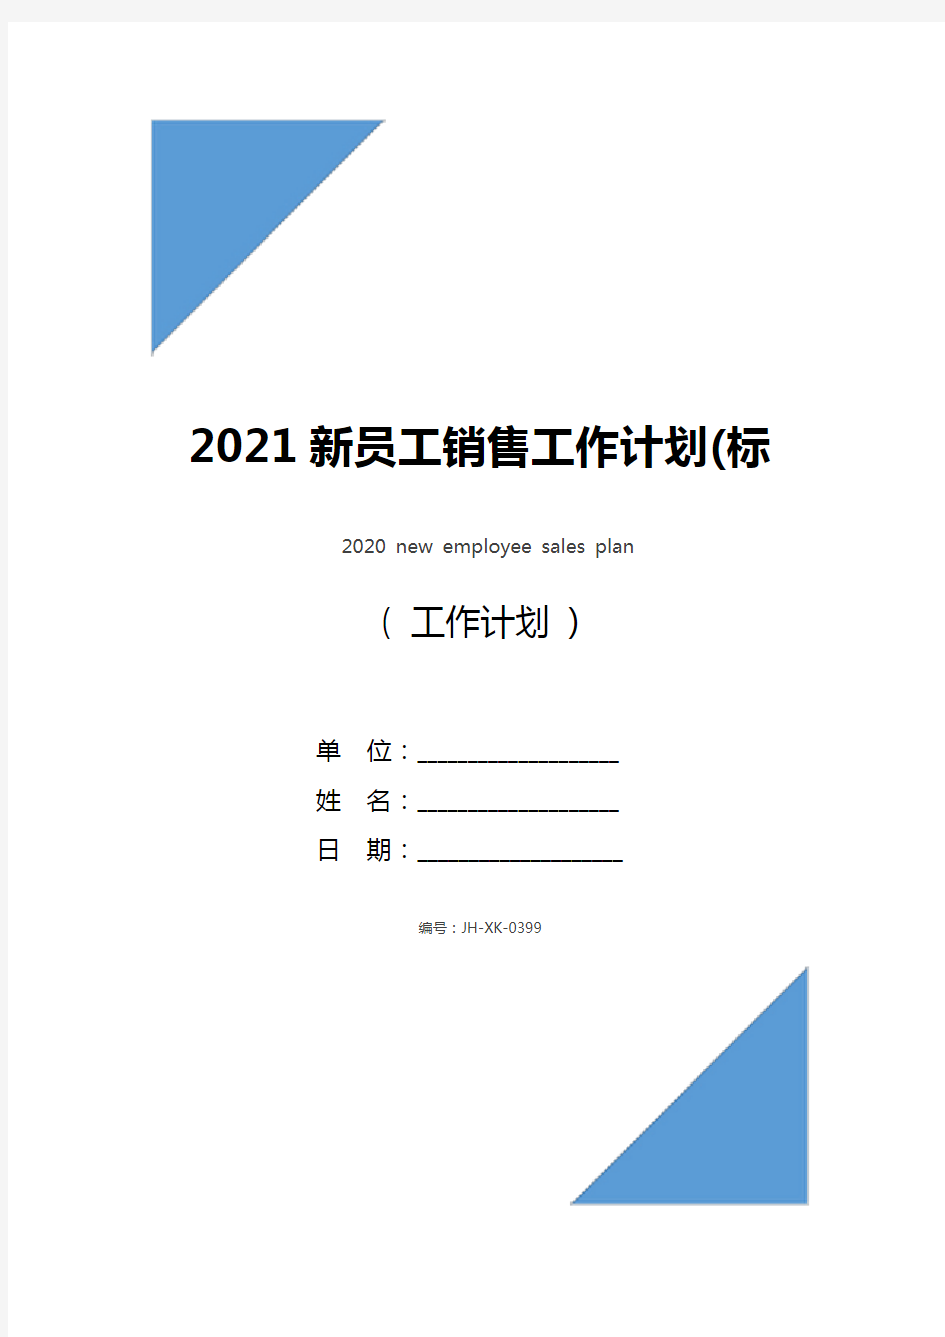 2021新员工销售工作计划(标准版)